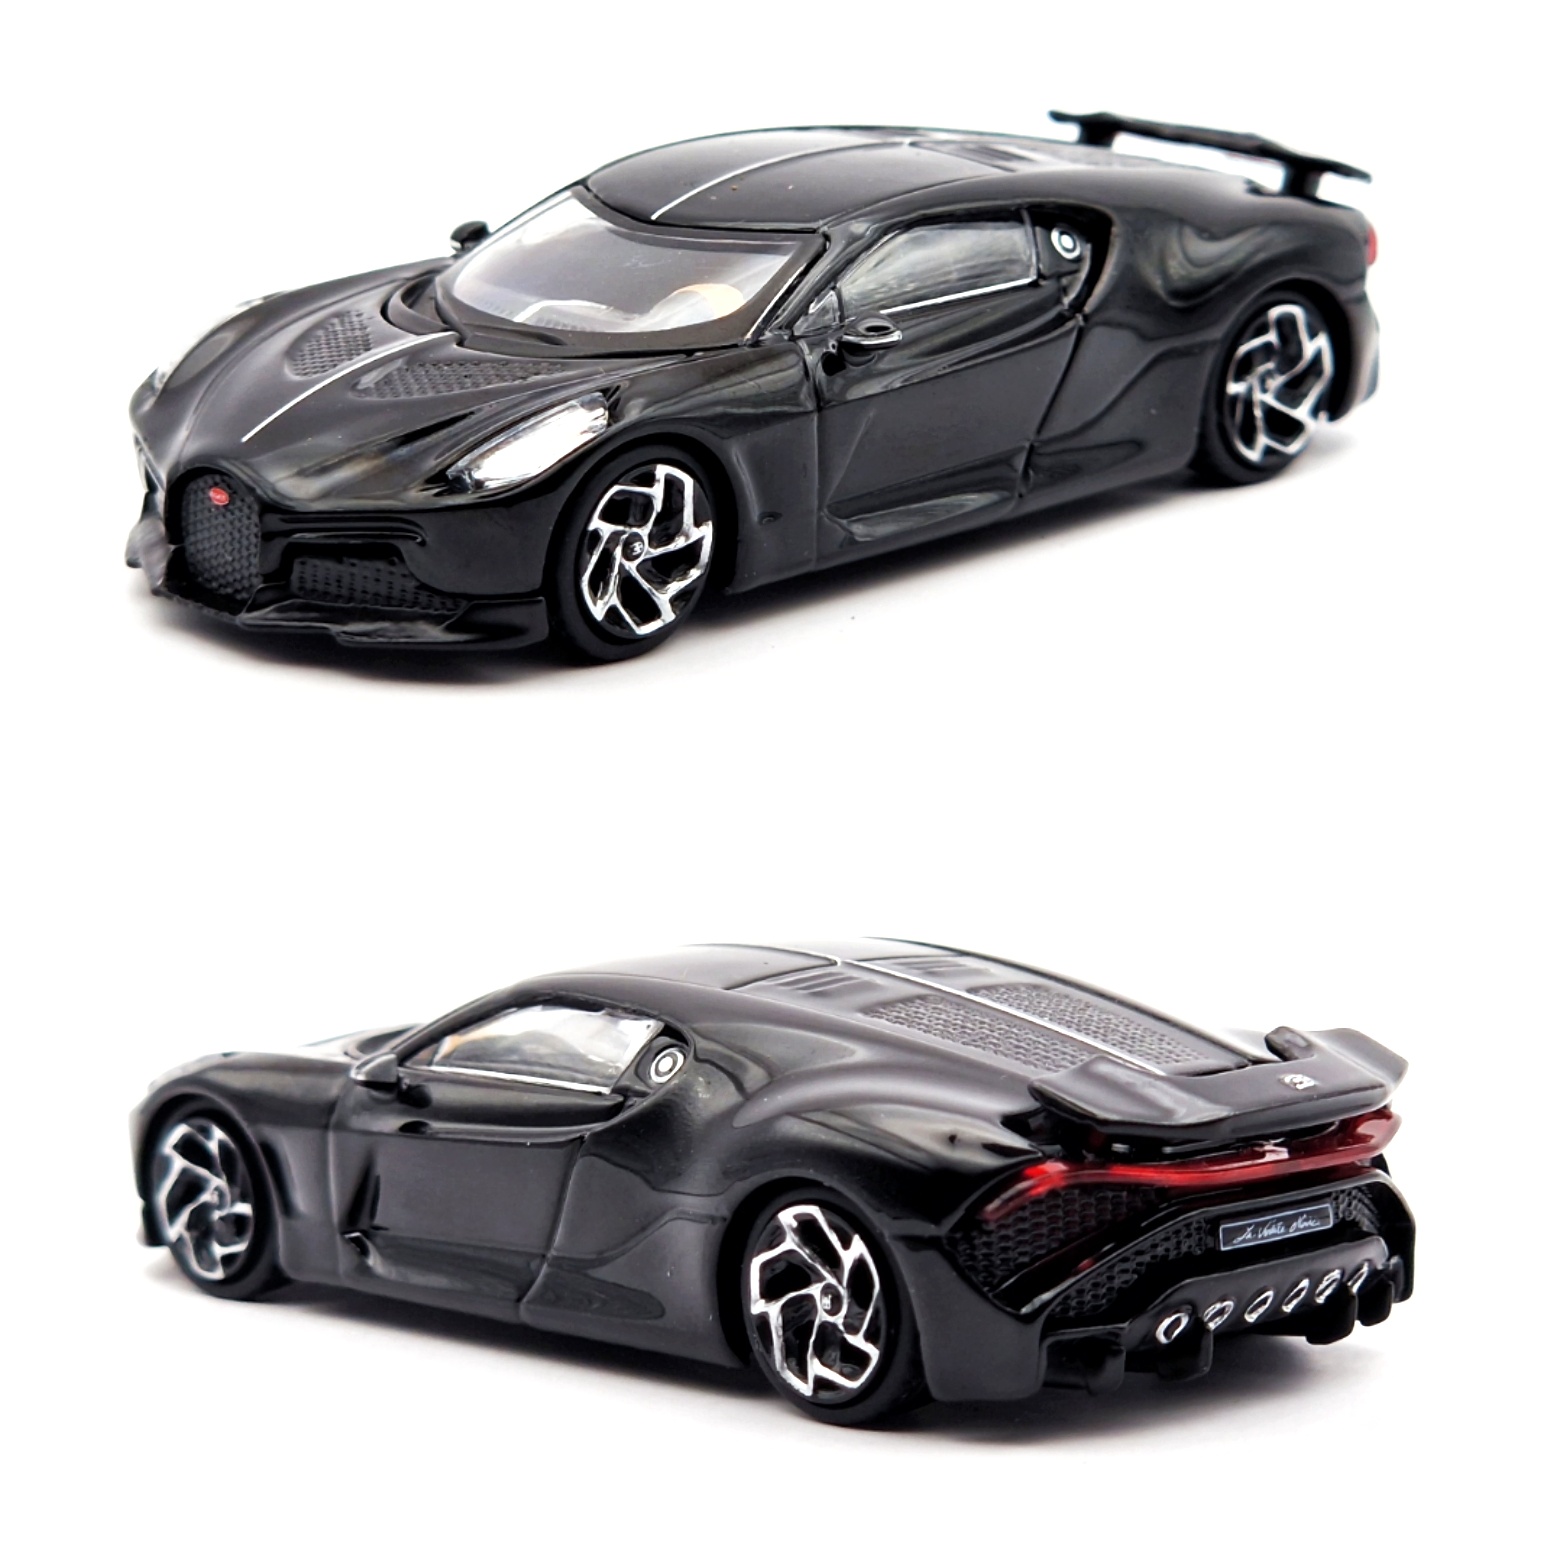 Bugatti La Voiture Noire 2019 Presemodel